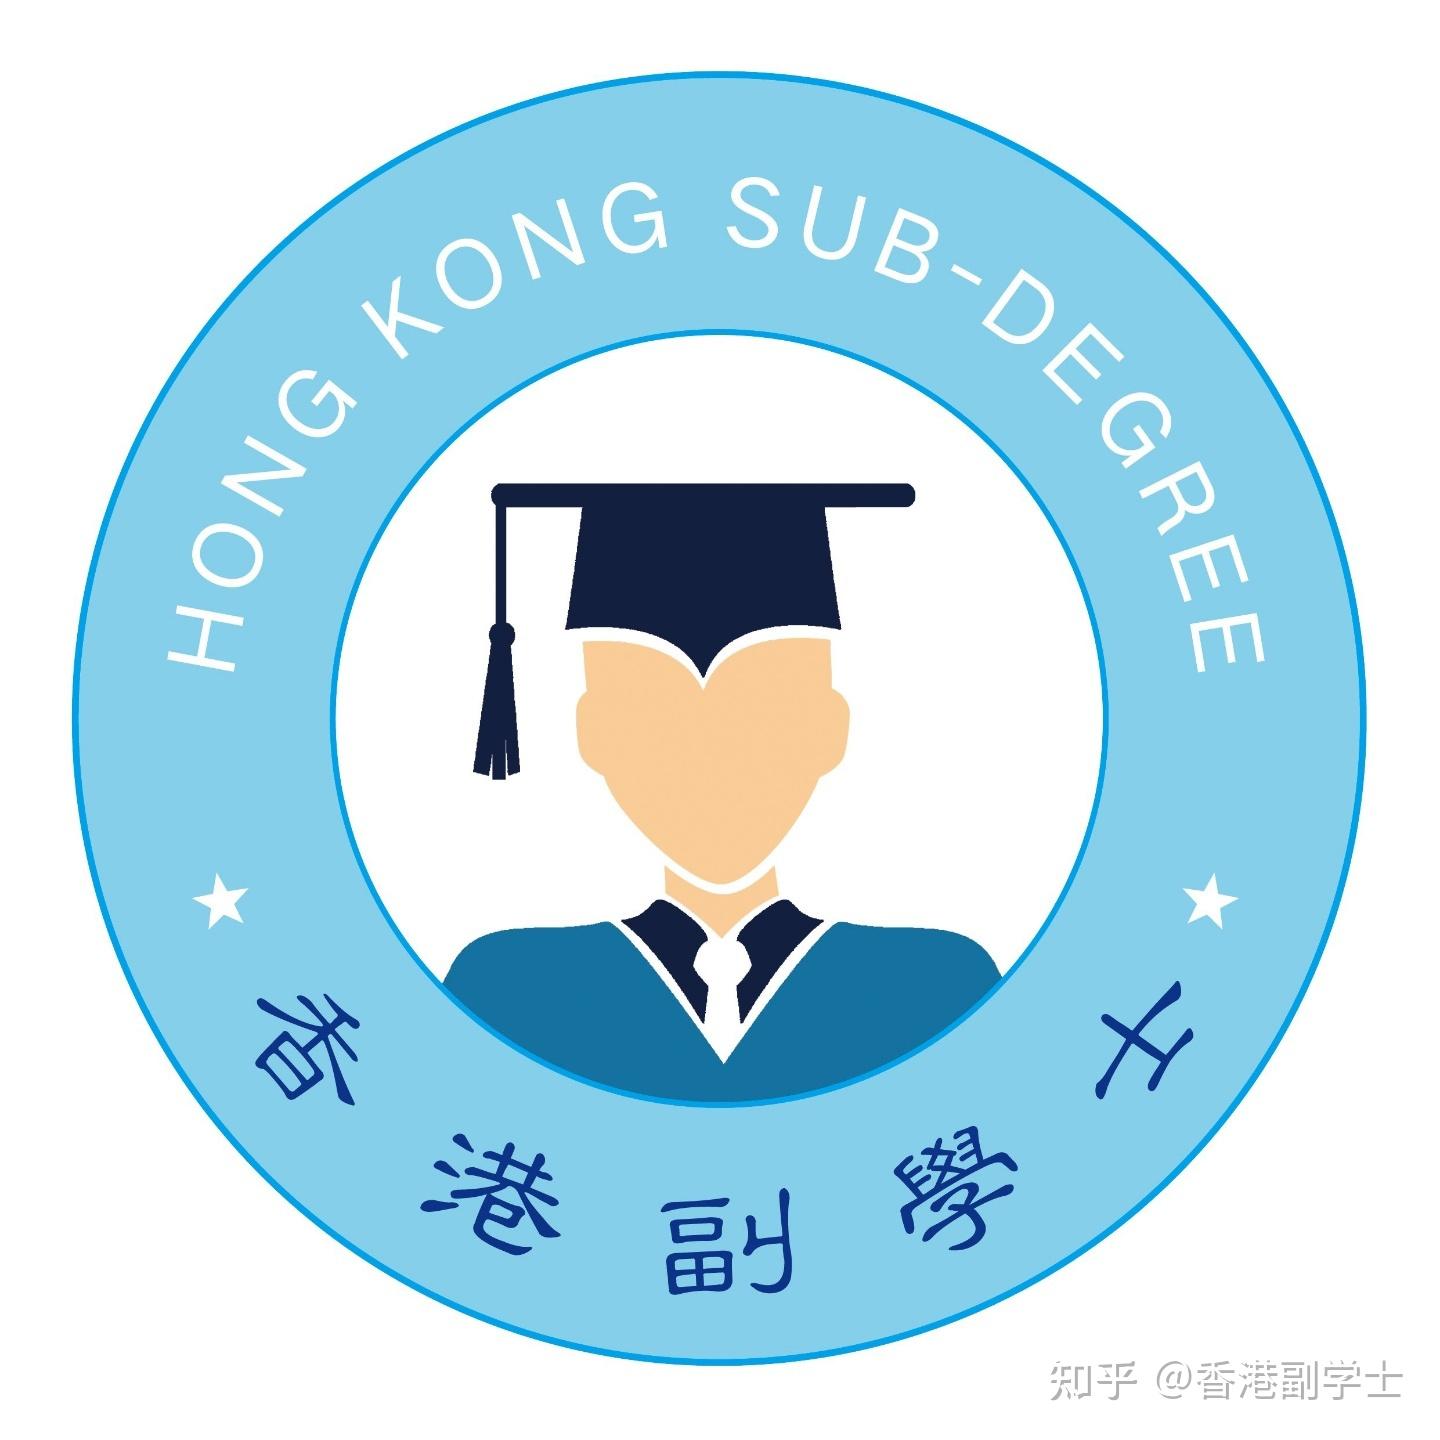 【香港副学士】在香港很牛的副学士,大陆学生需要全面